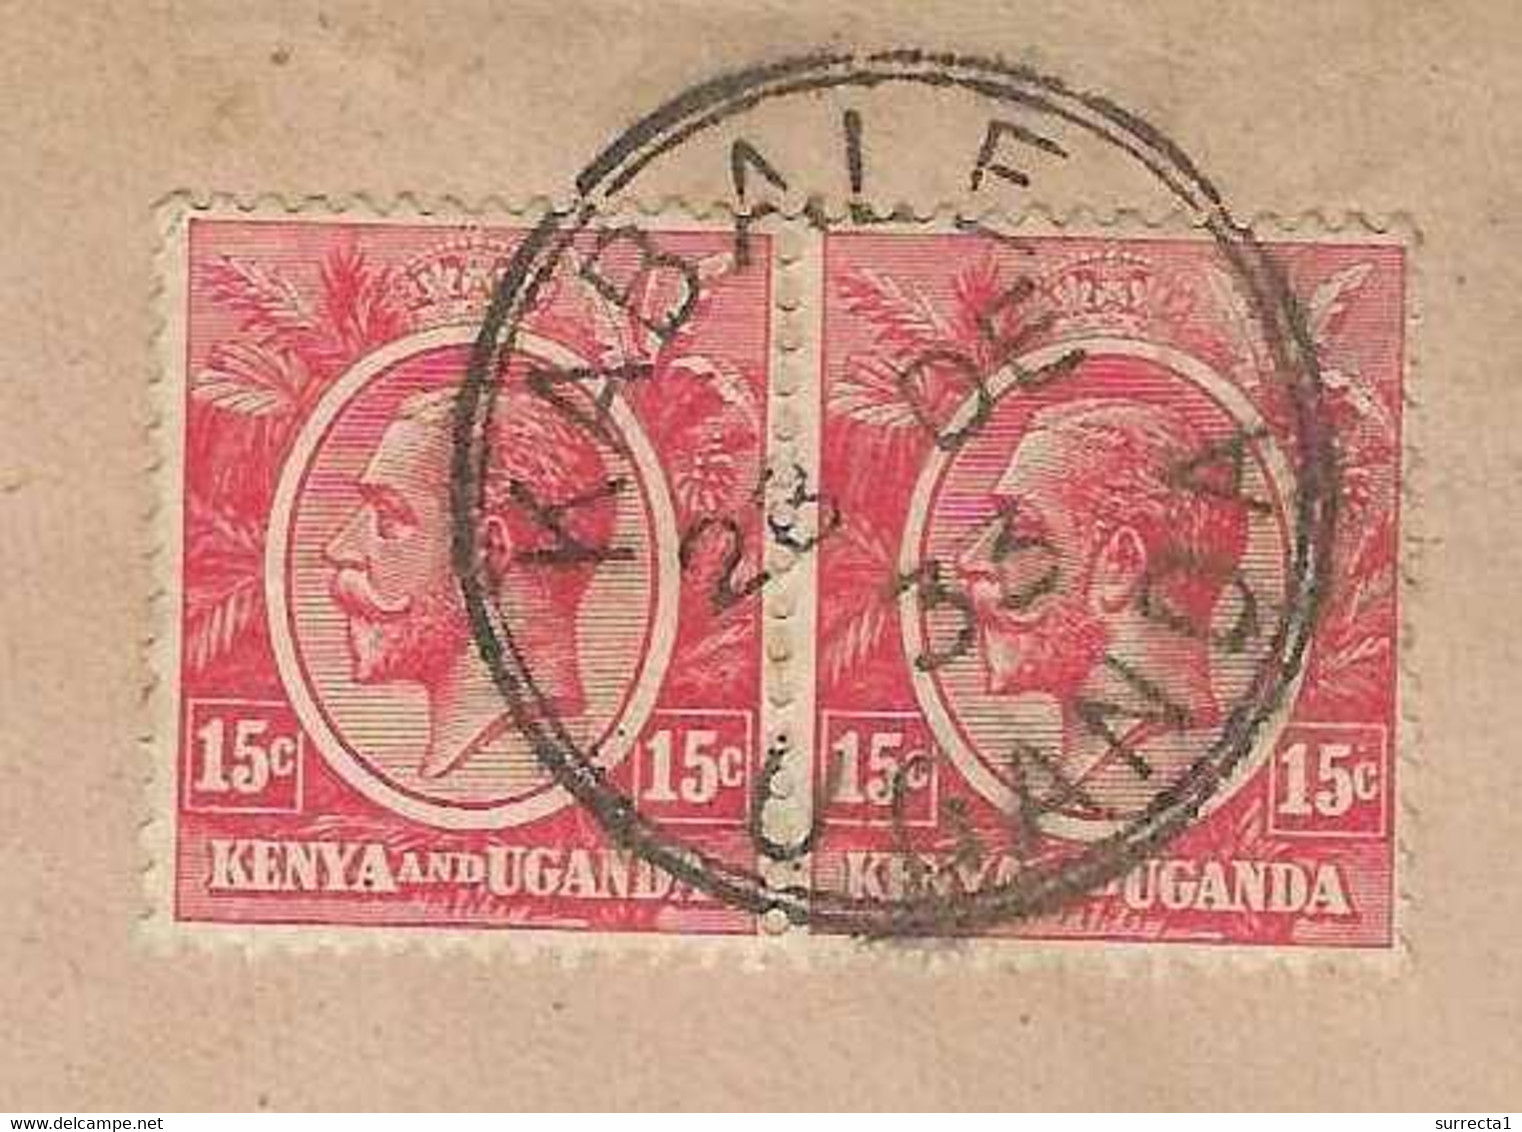 28 Déc 1933 / Enveloppe Uganda Kenya / Beau Cachet Double Cercle KABALE Uganda / Sur Enveloppe Illustrée Sarda Besançon - Kenya & Oeganda